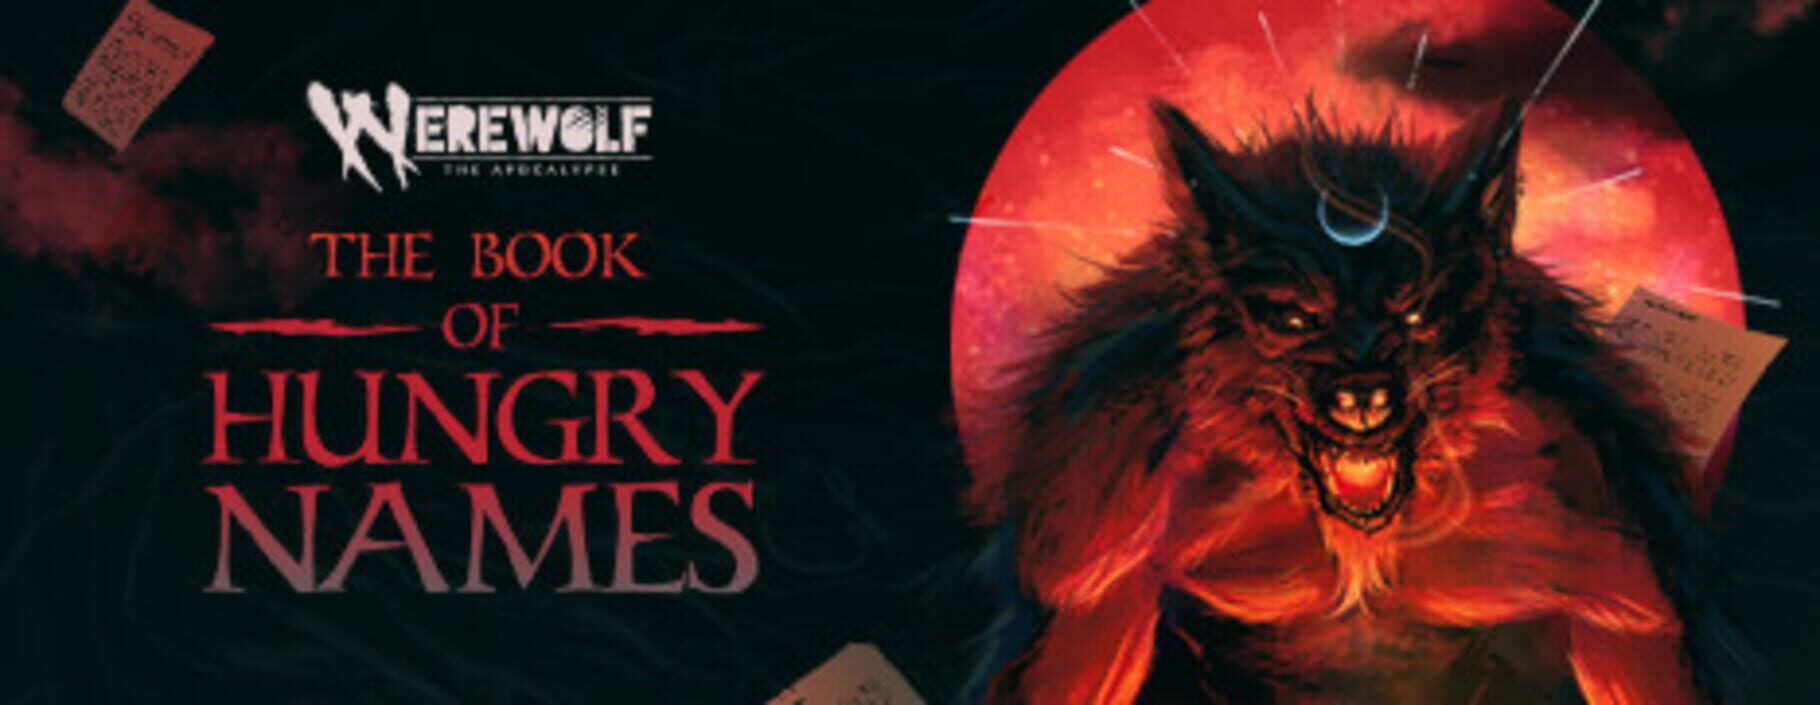 Captura de pantalla - Werewolf: The Apocalypse - The Book of Hungry Names